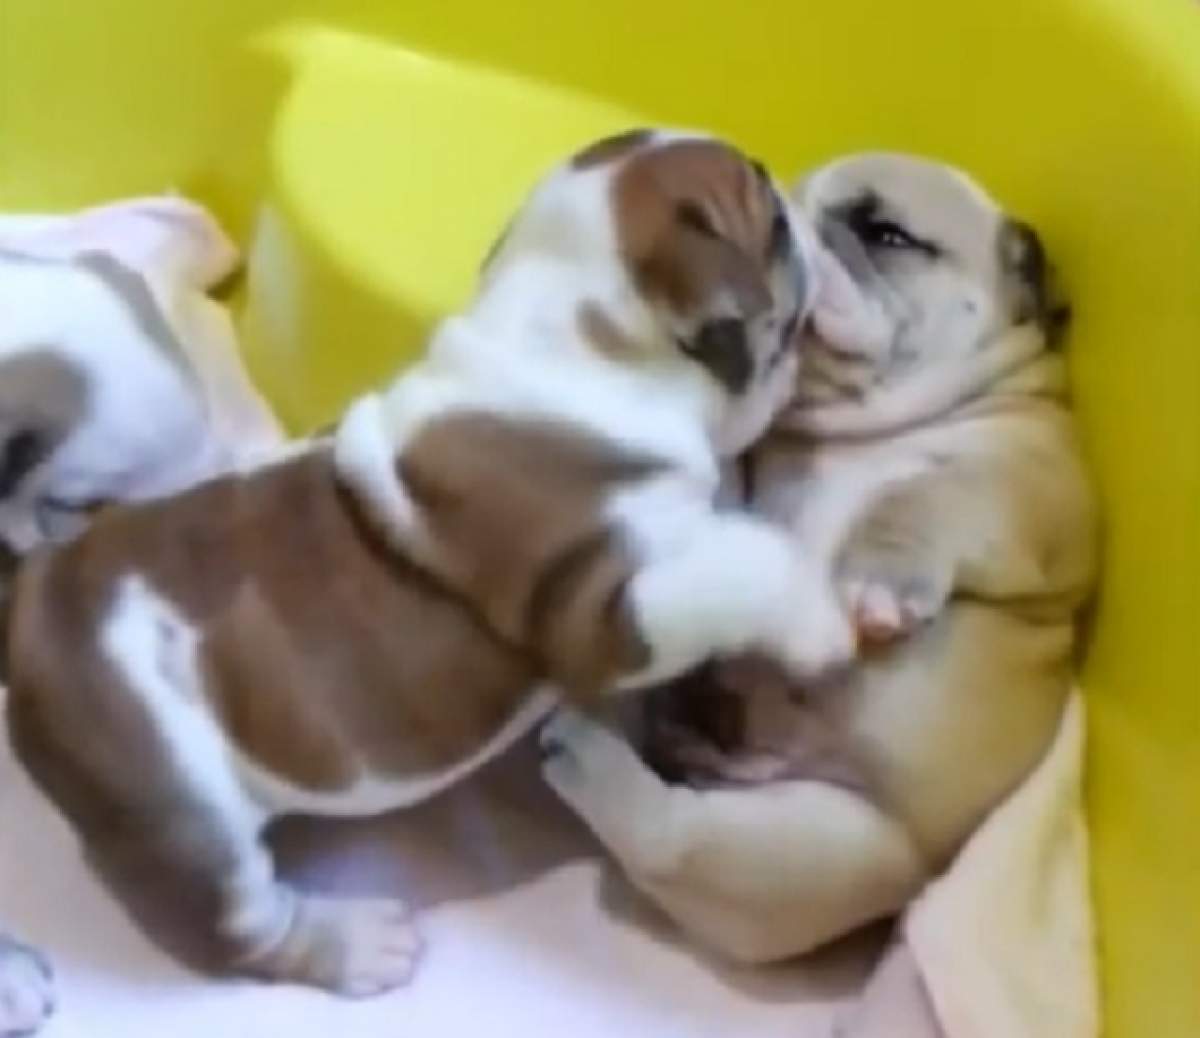 VIDEO ÎNDUIOŞĂTOR!  Doi căţeluşi se sărută şi se alintă ca oamenii